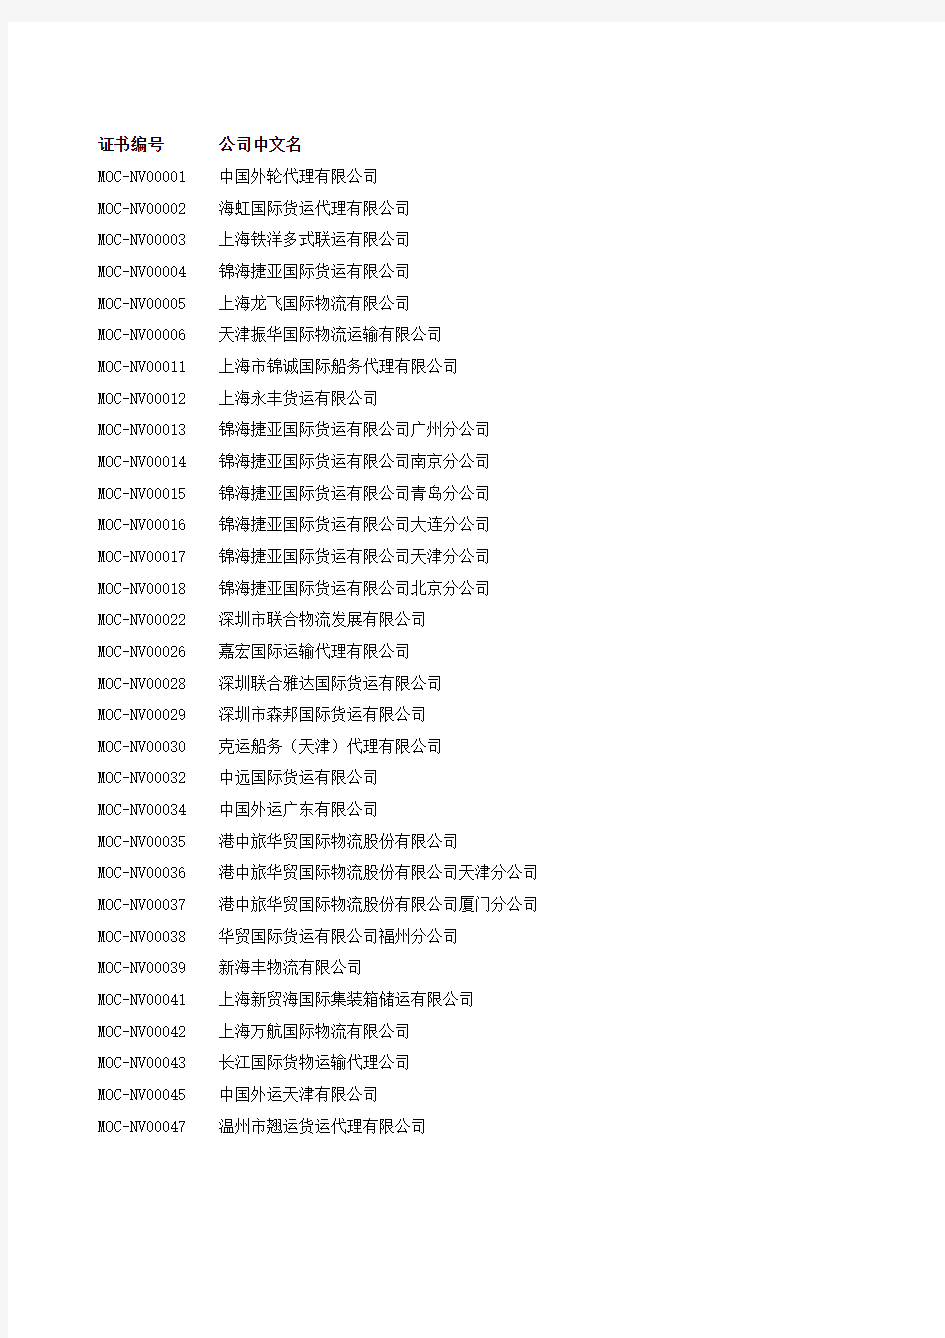 无船承运业务经营者名单(截止2014年5月15日)